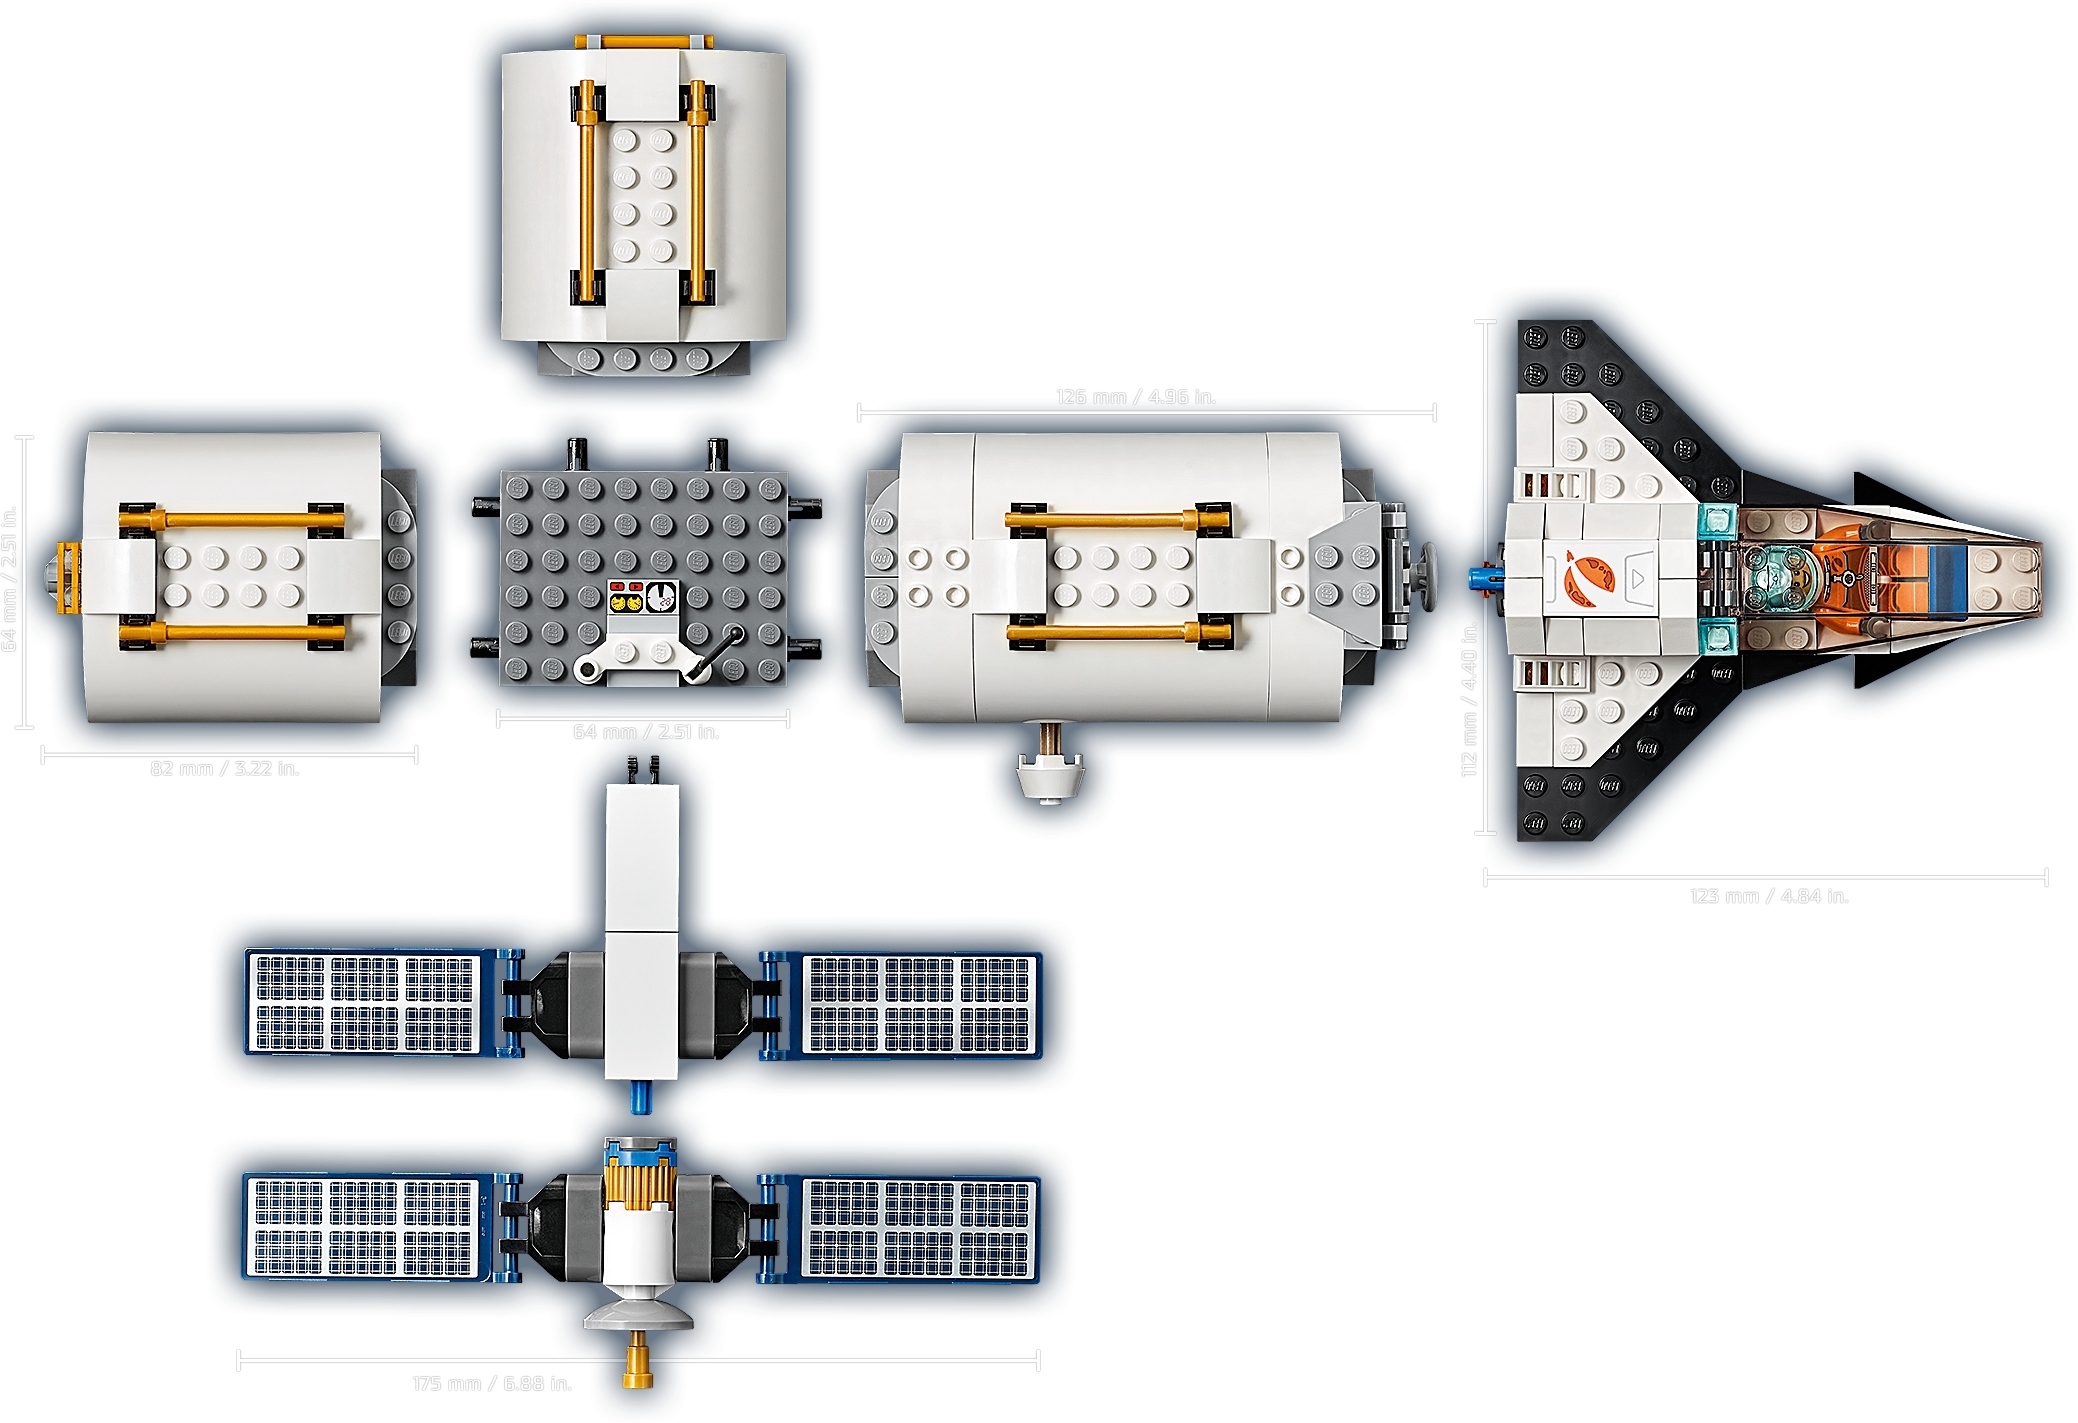 60227 Luna Estación Espacial & Envío & Nuevo & Emb.orig Lego City 